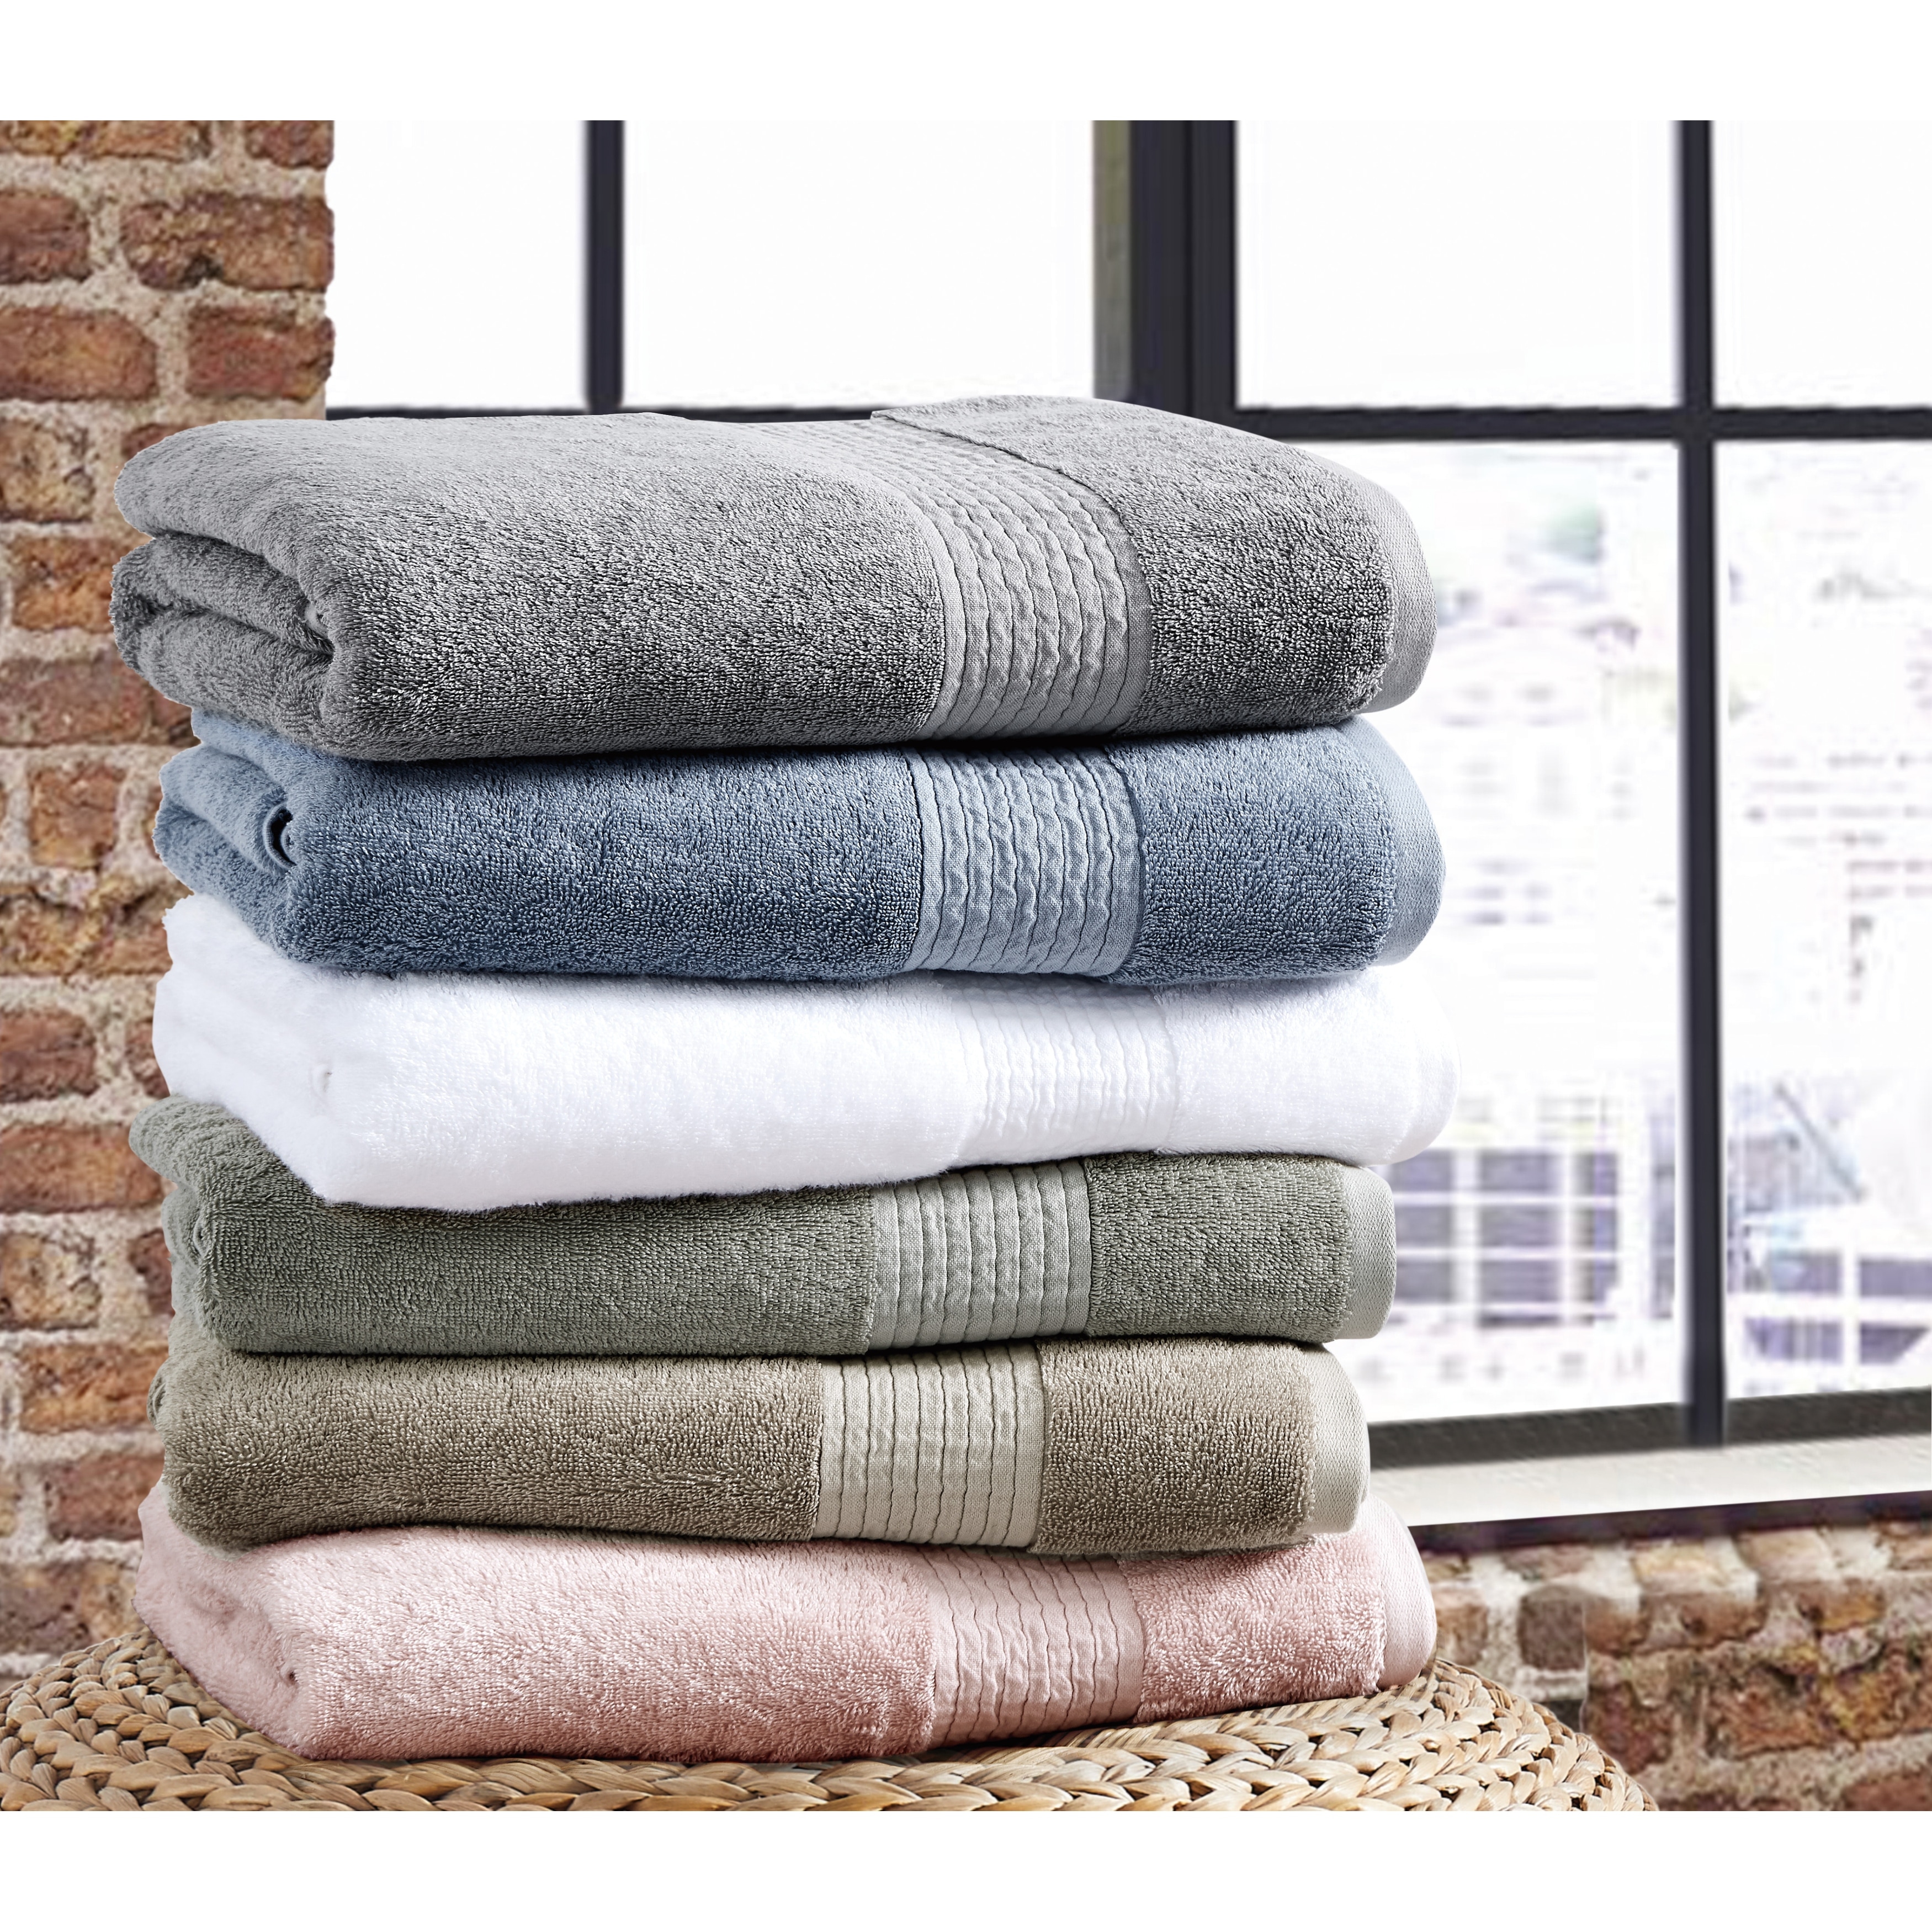 https://ak1.ostkcdn.com/images/products/is/images/direct/fec0ebebea41586ce18bb6d136d9ba6a57ccc6c9/Brooklyn-Loom-Cotton-TENCEL-6-Piece-Towel-Set.jpg